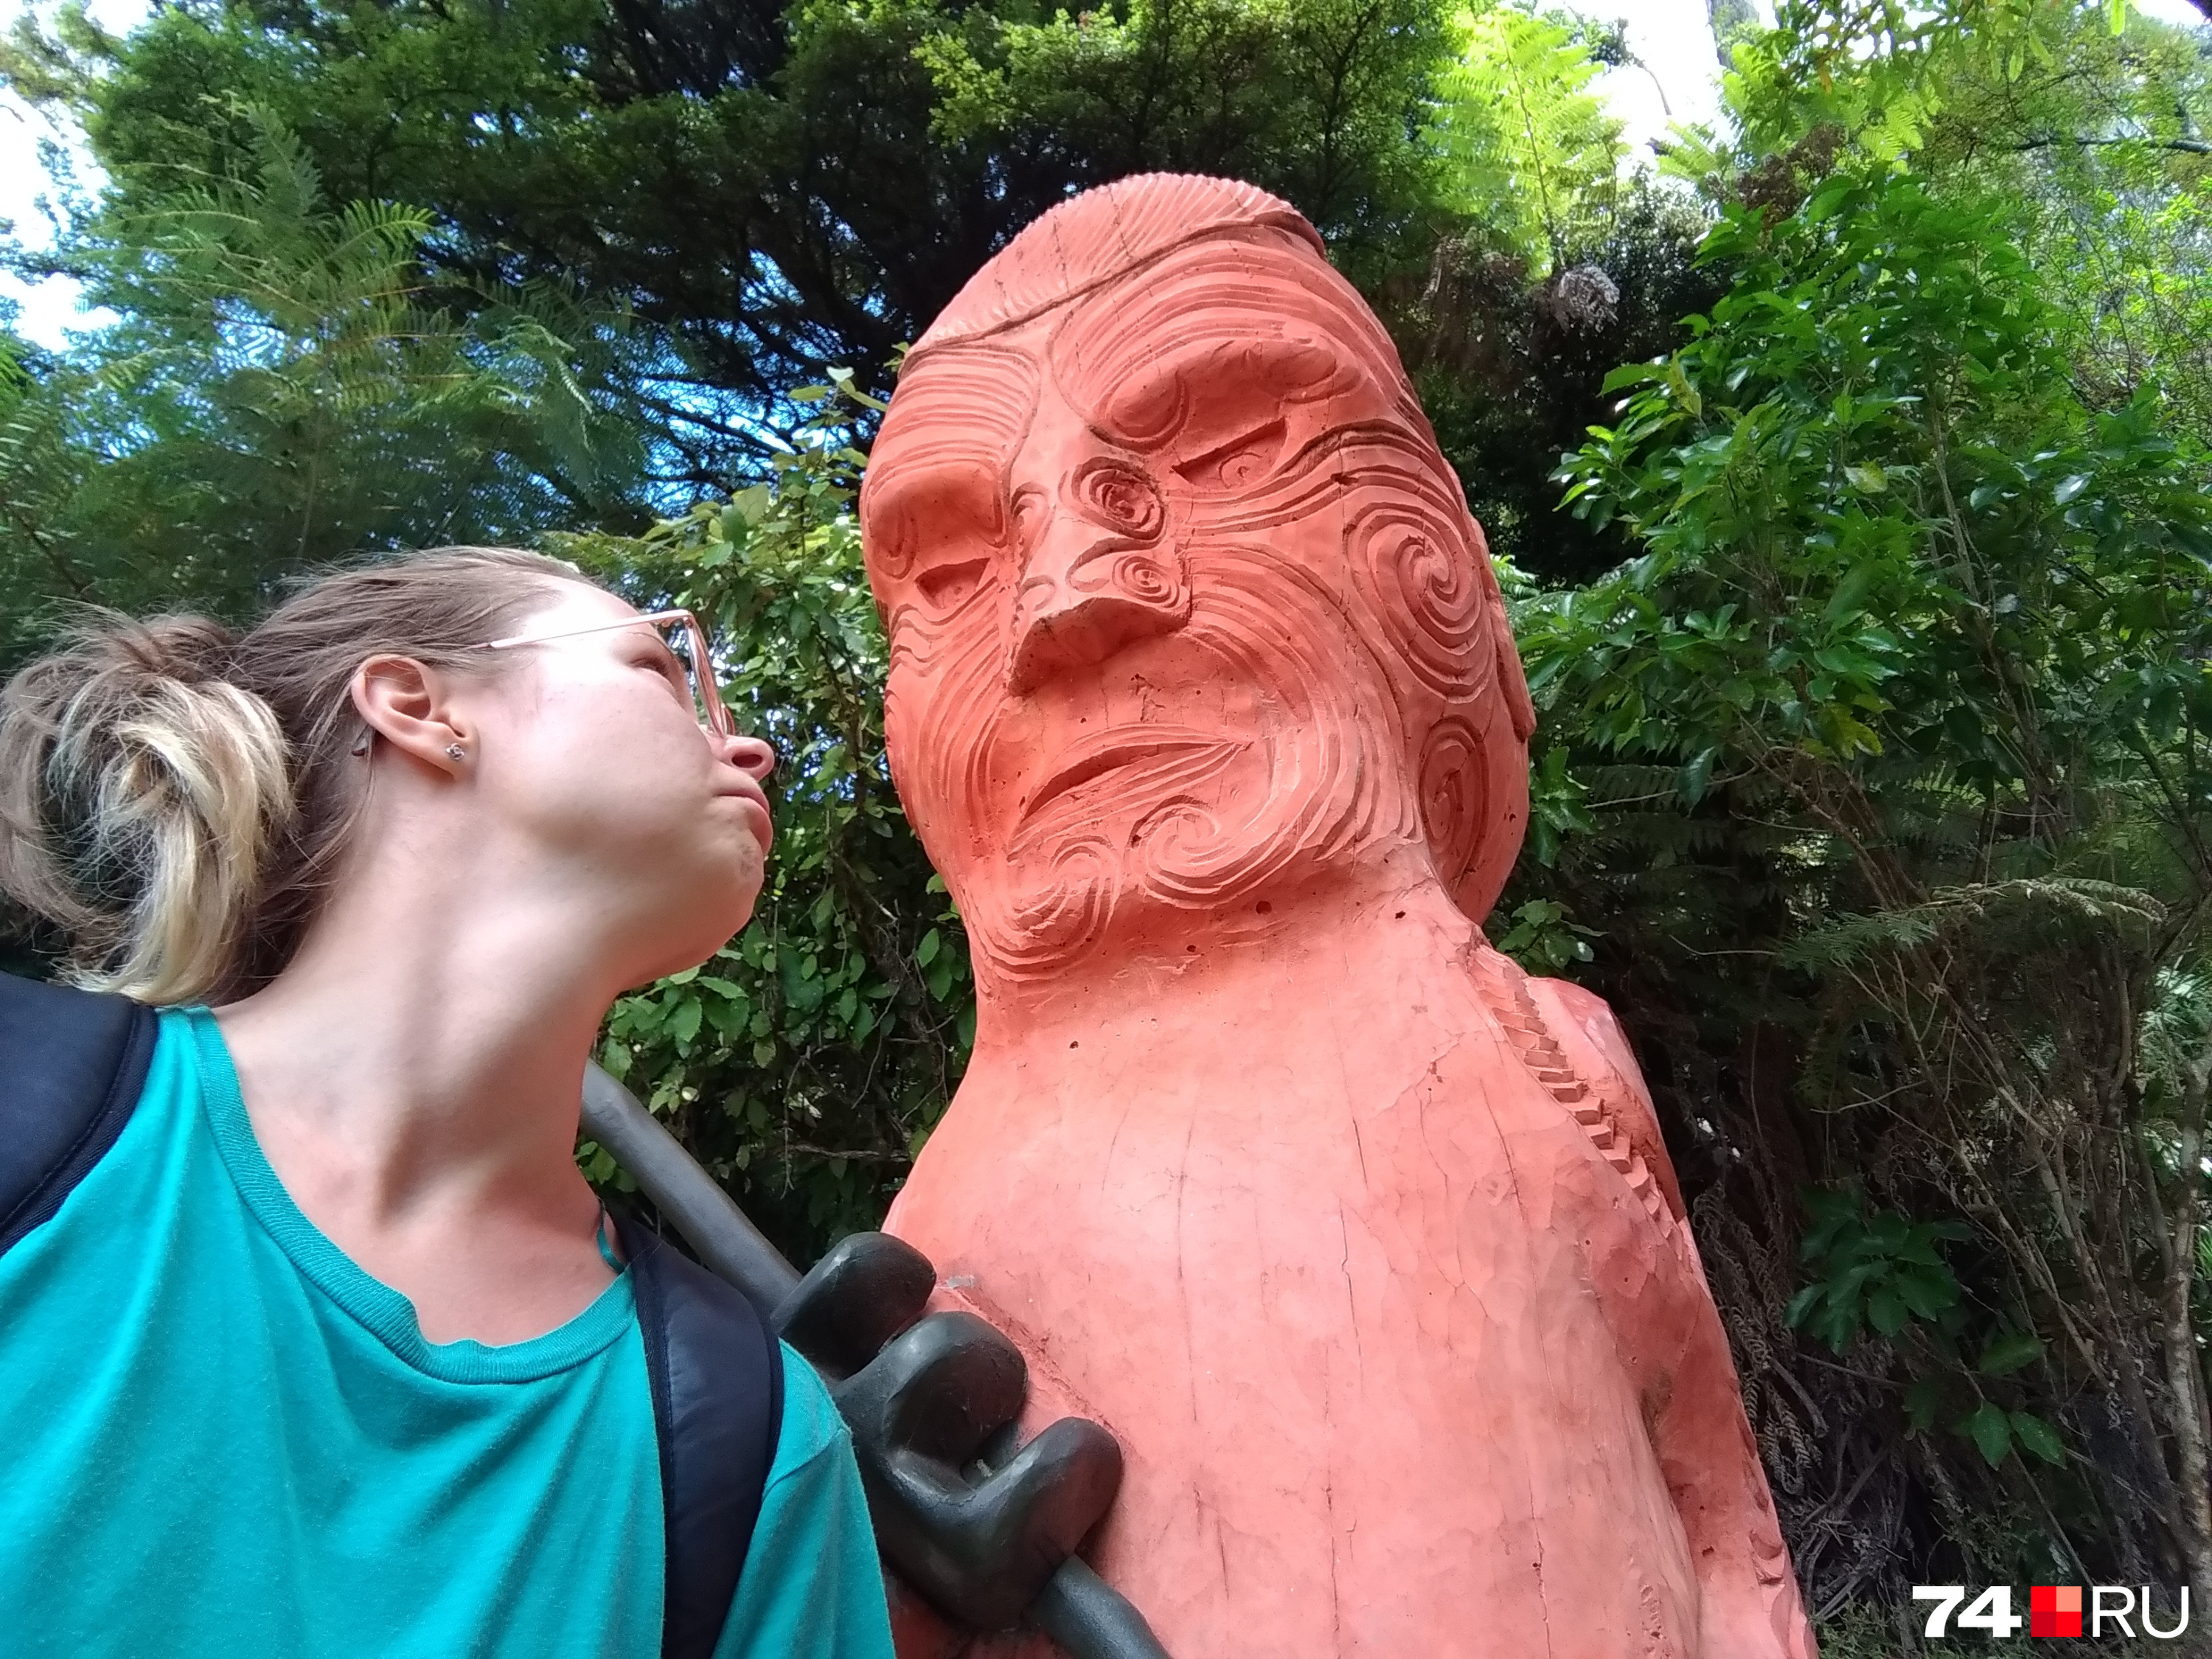 Наташа с фигурой маорийского воина, который борется за свои духовные ценности